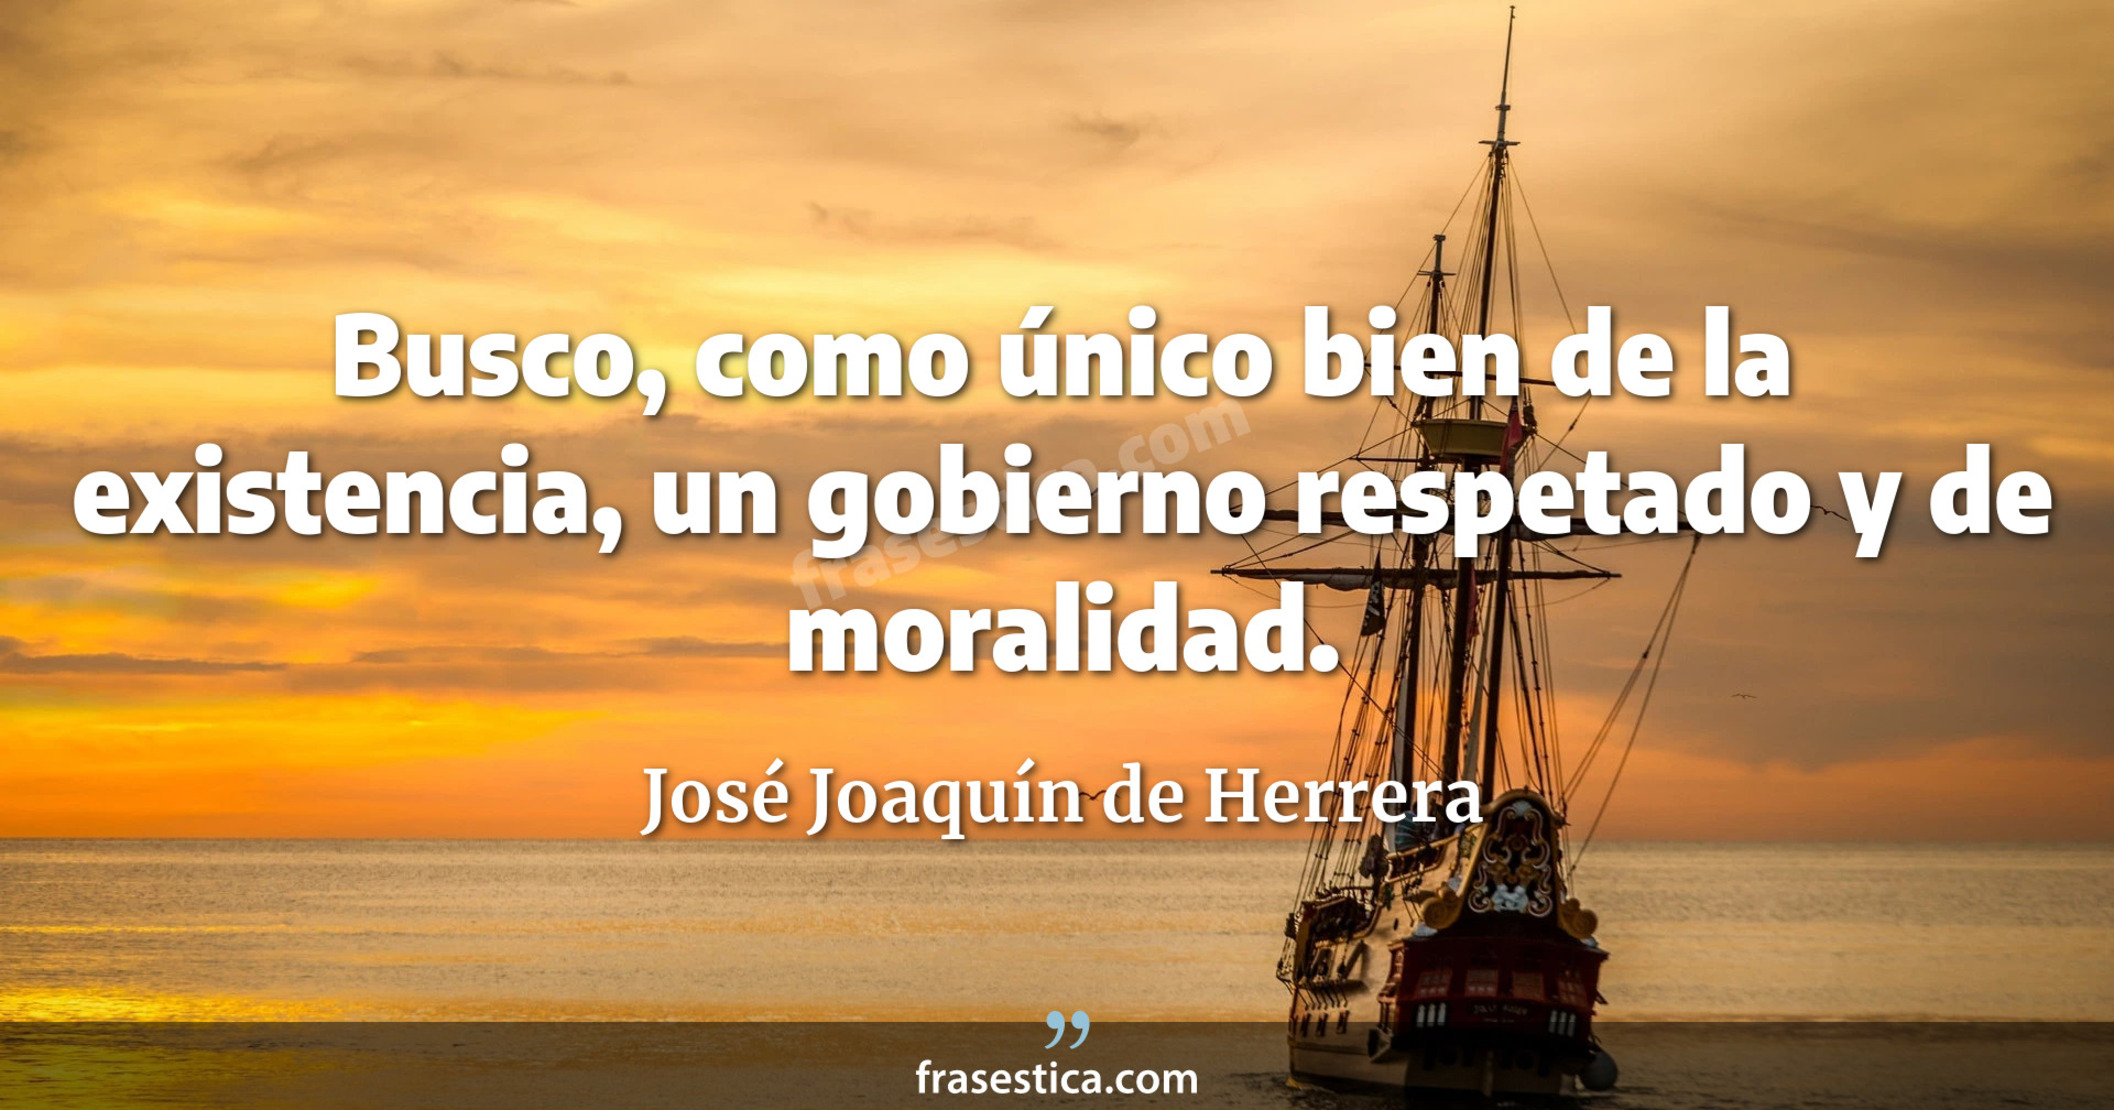 Busco, como único bien de la existencia, un gobierno respetado y de moralidad. - José Joaquín de Herrera